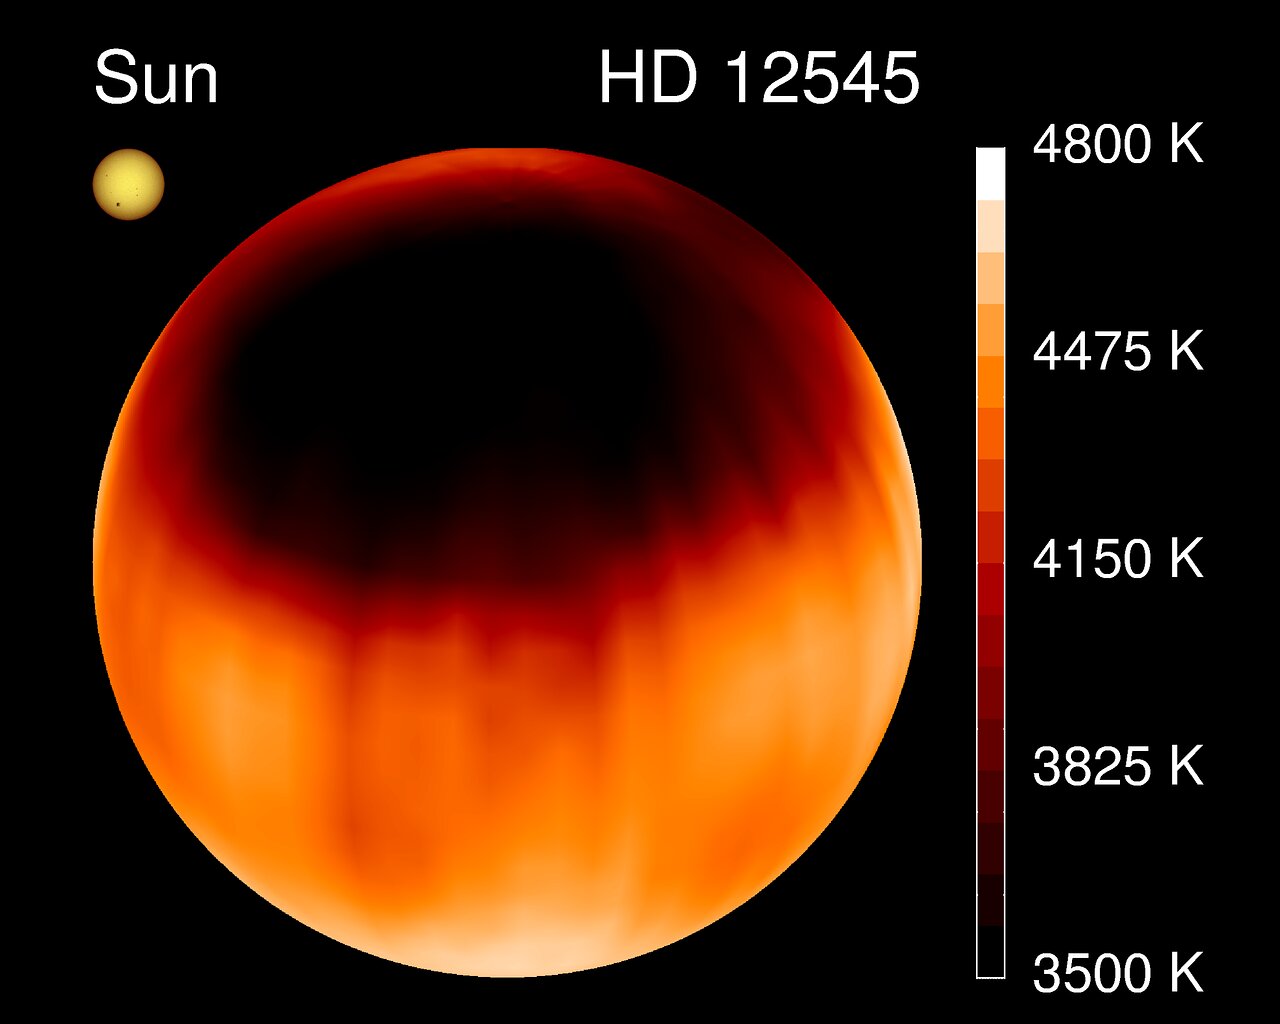  На этом снимке показан температурный профиль эволюционировавшей звезды HD 12545, на которой не просто имеется небольшое количество крошечных пятен, как на Солнце, а доминирует массивное звёздное пятно, занимающее около 25 % её поверхности. Многие звёзды, в том числе маломассивные, молодые и быстро вращающиеся, могут похвастать огромными пятнами, которые могут играть важную роль в обитаемости их систем: пока что системы у таких звёзд не подходят в качестве кандидатов на жизнь. Однако в течение достаточно долгого времени даже самые маломассивные красные карлики придут к устойчивому, не меняющемуся состоянию с постоянной светимостью.